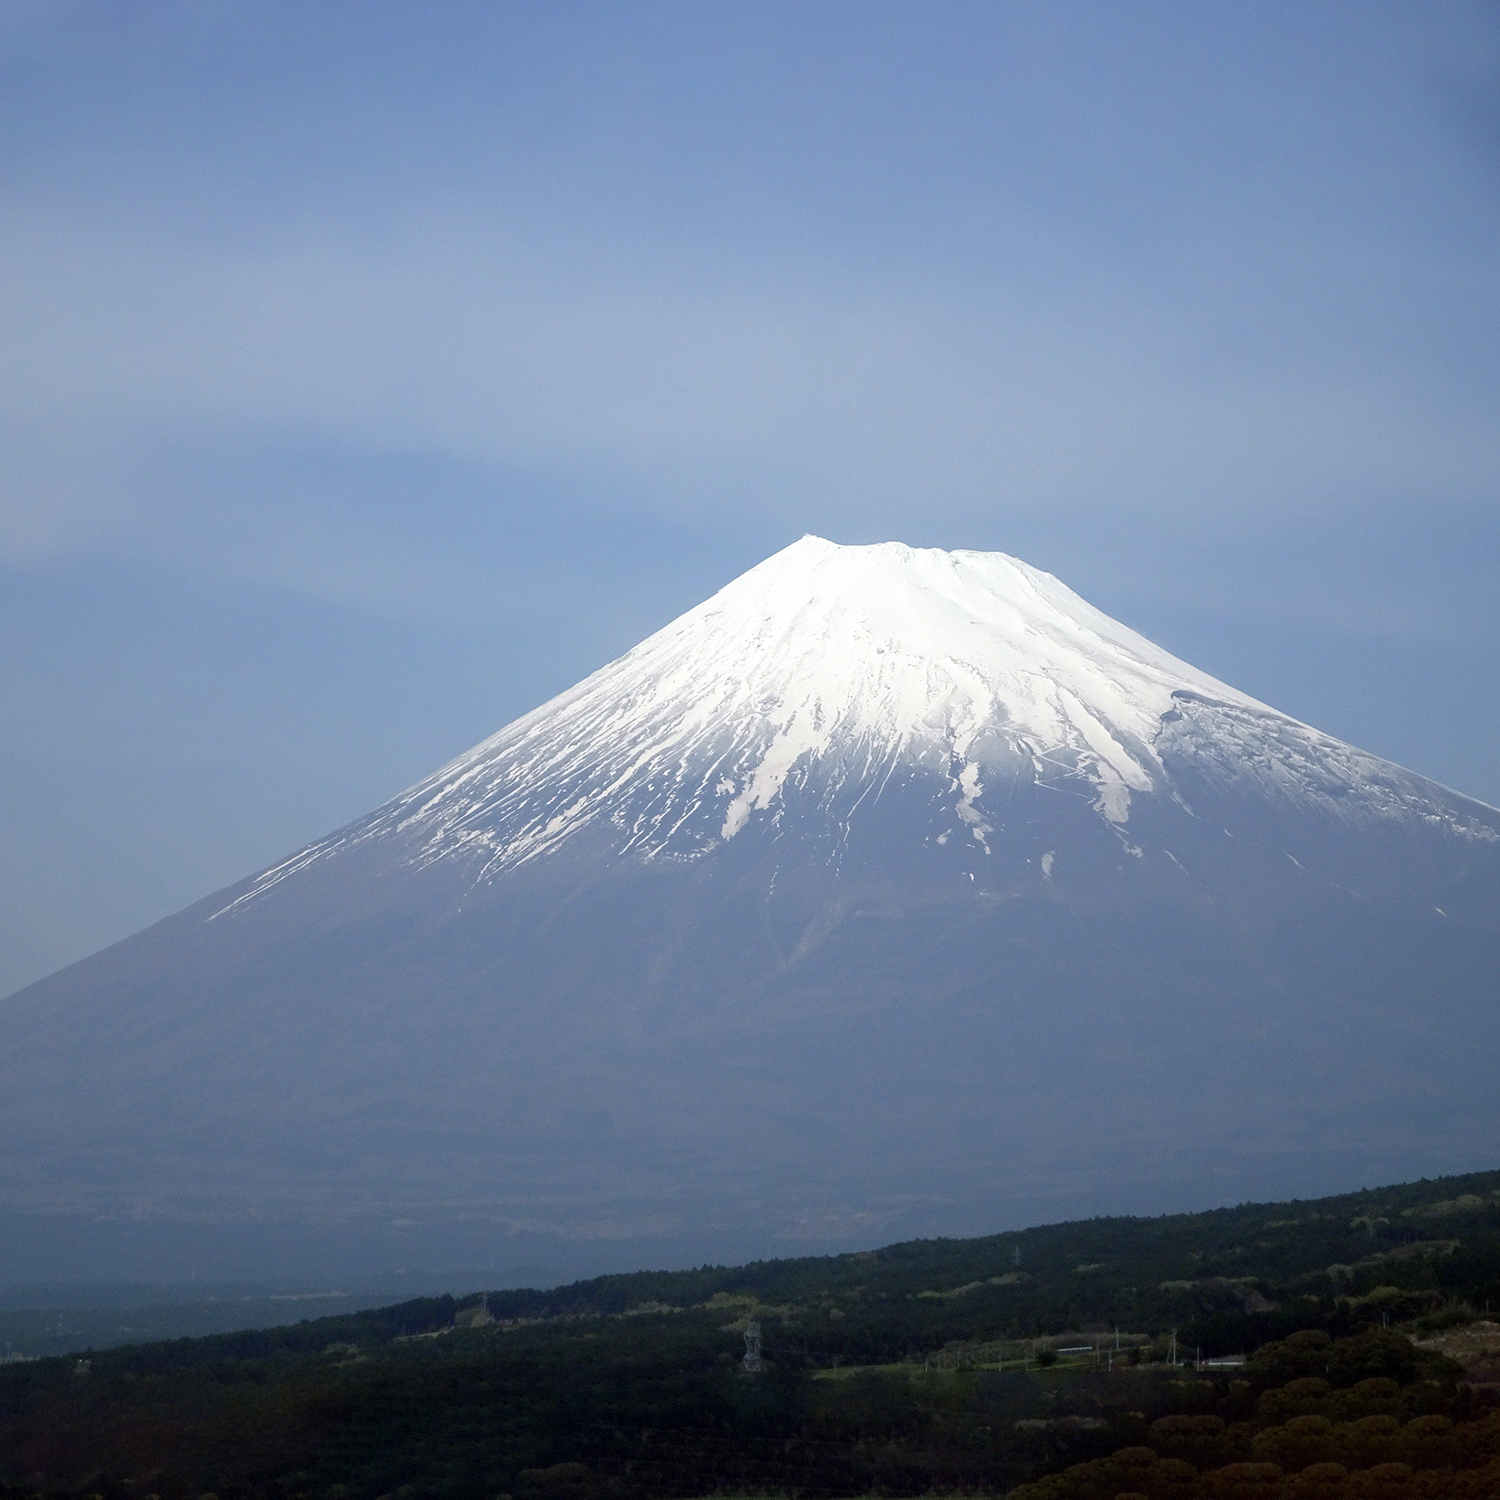 Mount Fuji seen from the Shinkasen